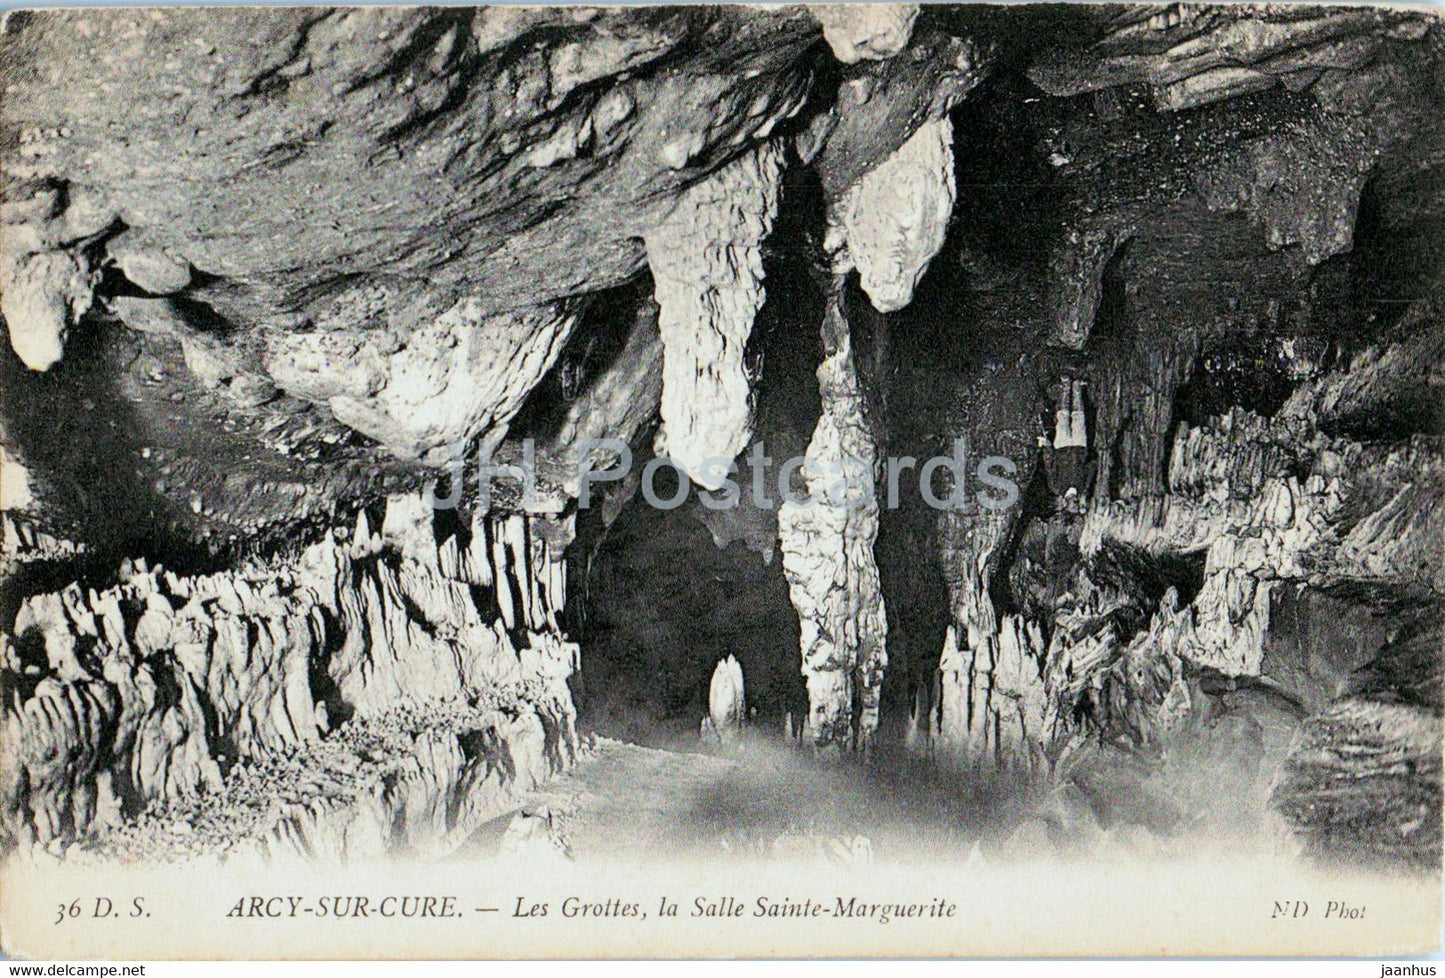 Arcy sur Cure - Les Grottes la Salle Sainte Marguerite - cave - 36 - old postcard - France - unused - JH Postcards